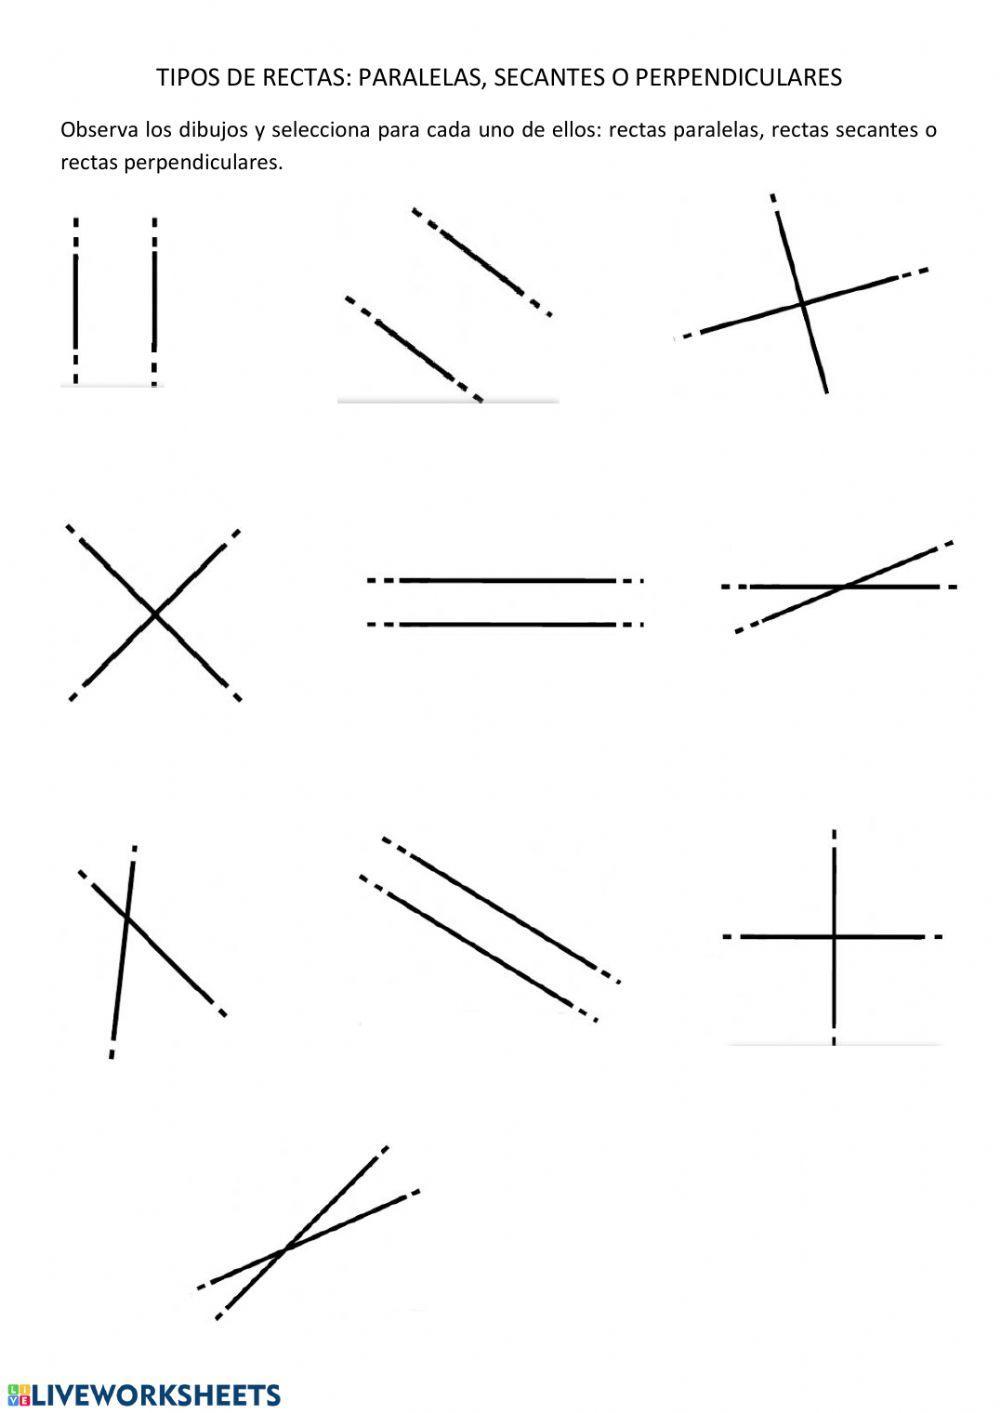 Tipos de rectas: paralelas, secantes y perpendiculares